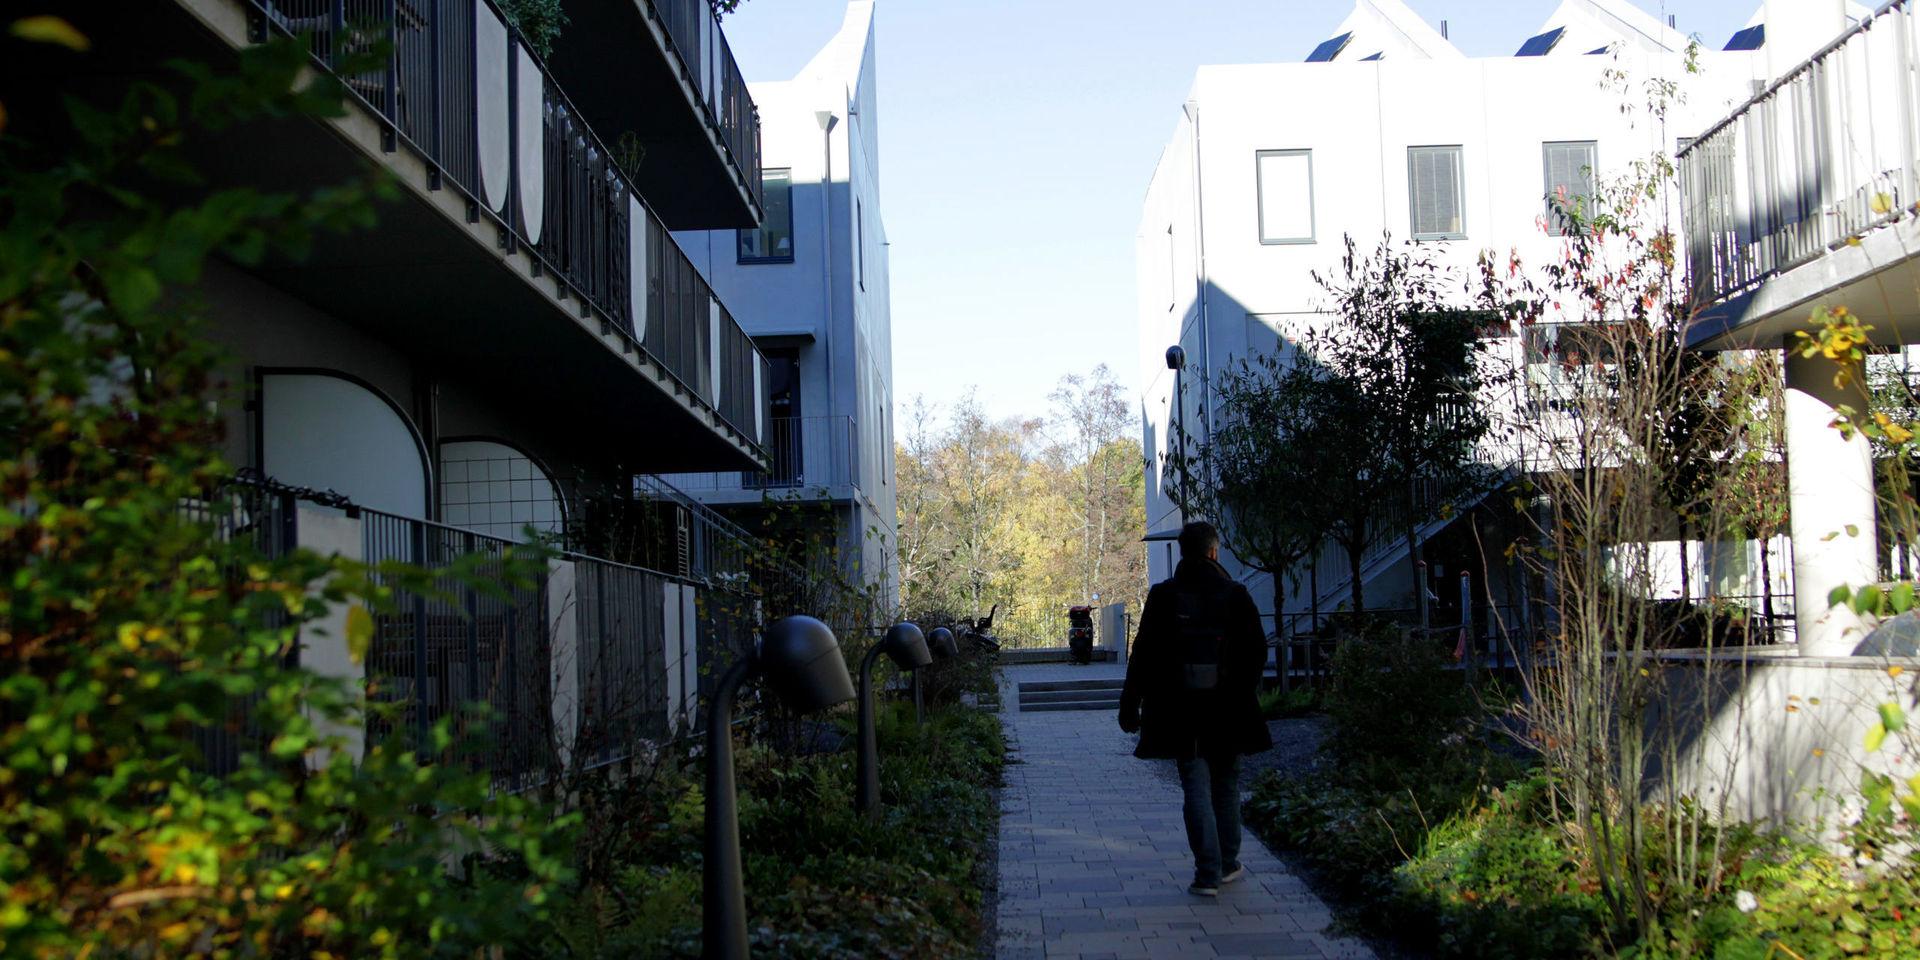 Förebild. Idéer till den nya stadsdelen Västerport har bland annat hämtats i Norra Djurgårdsstaden i Stockholm.